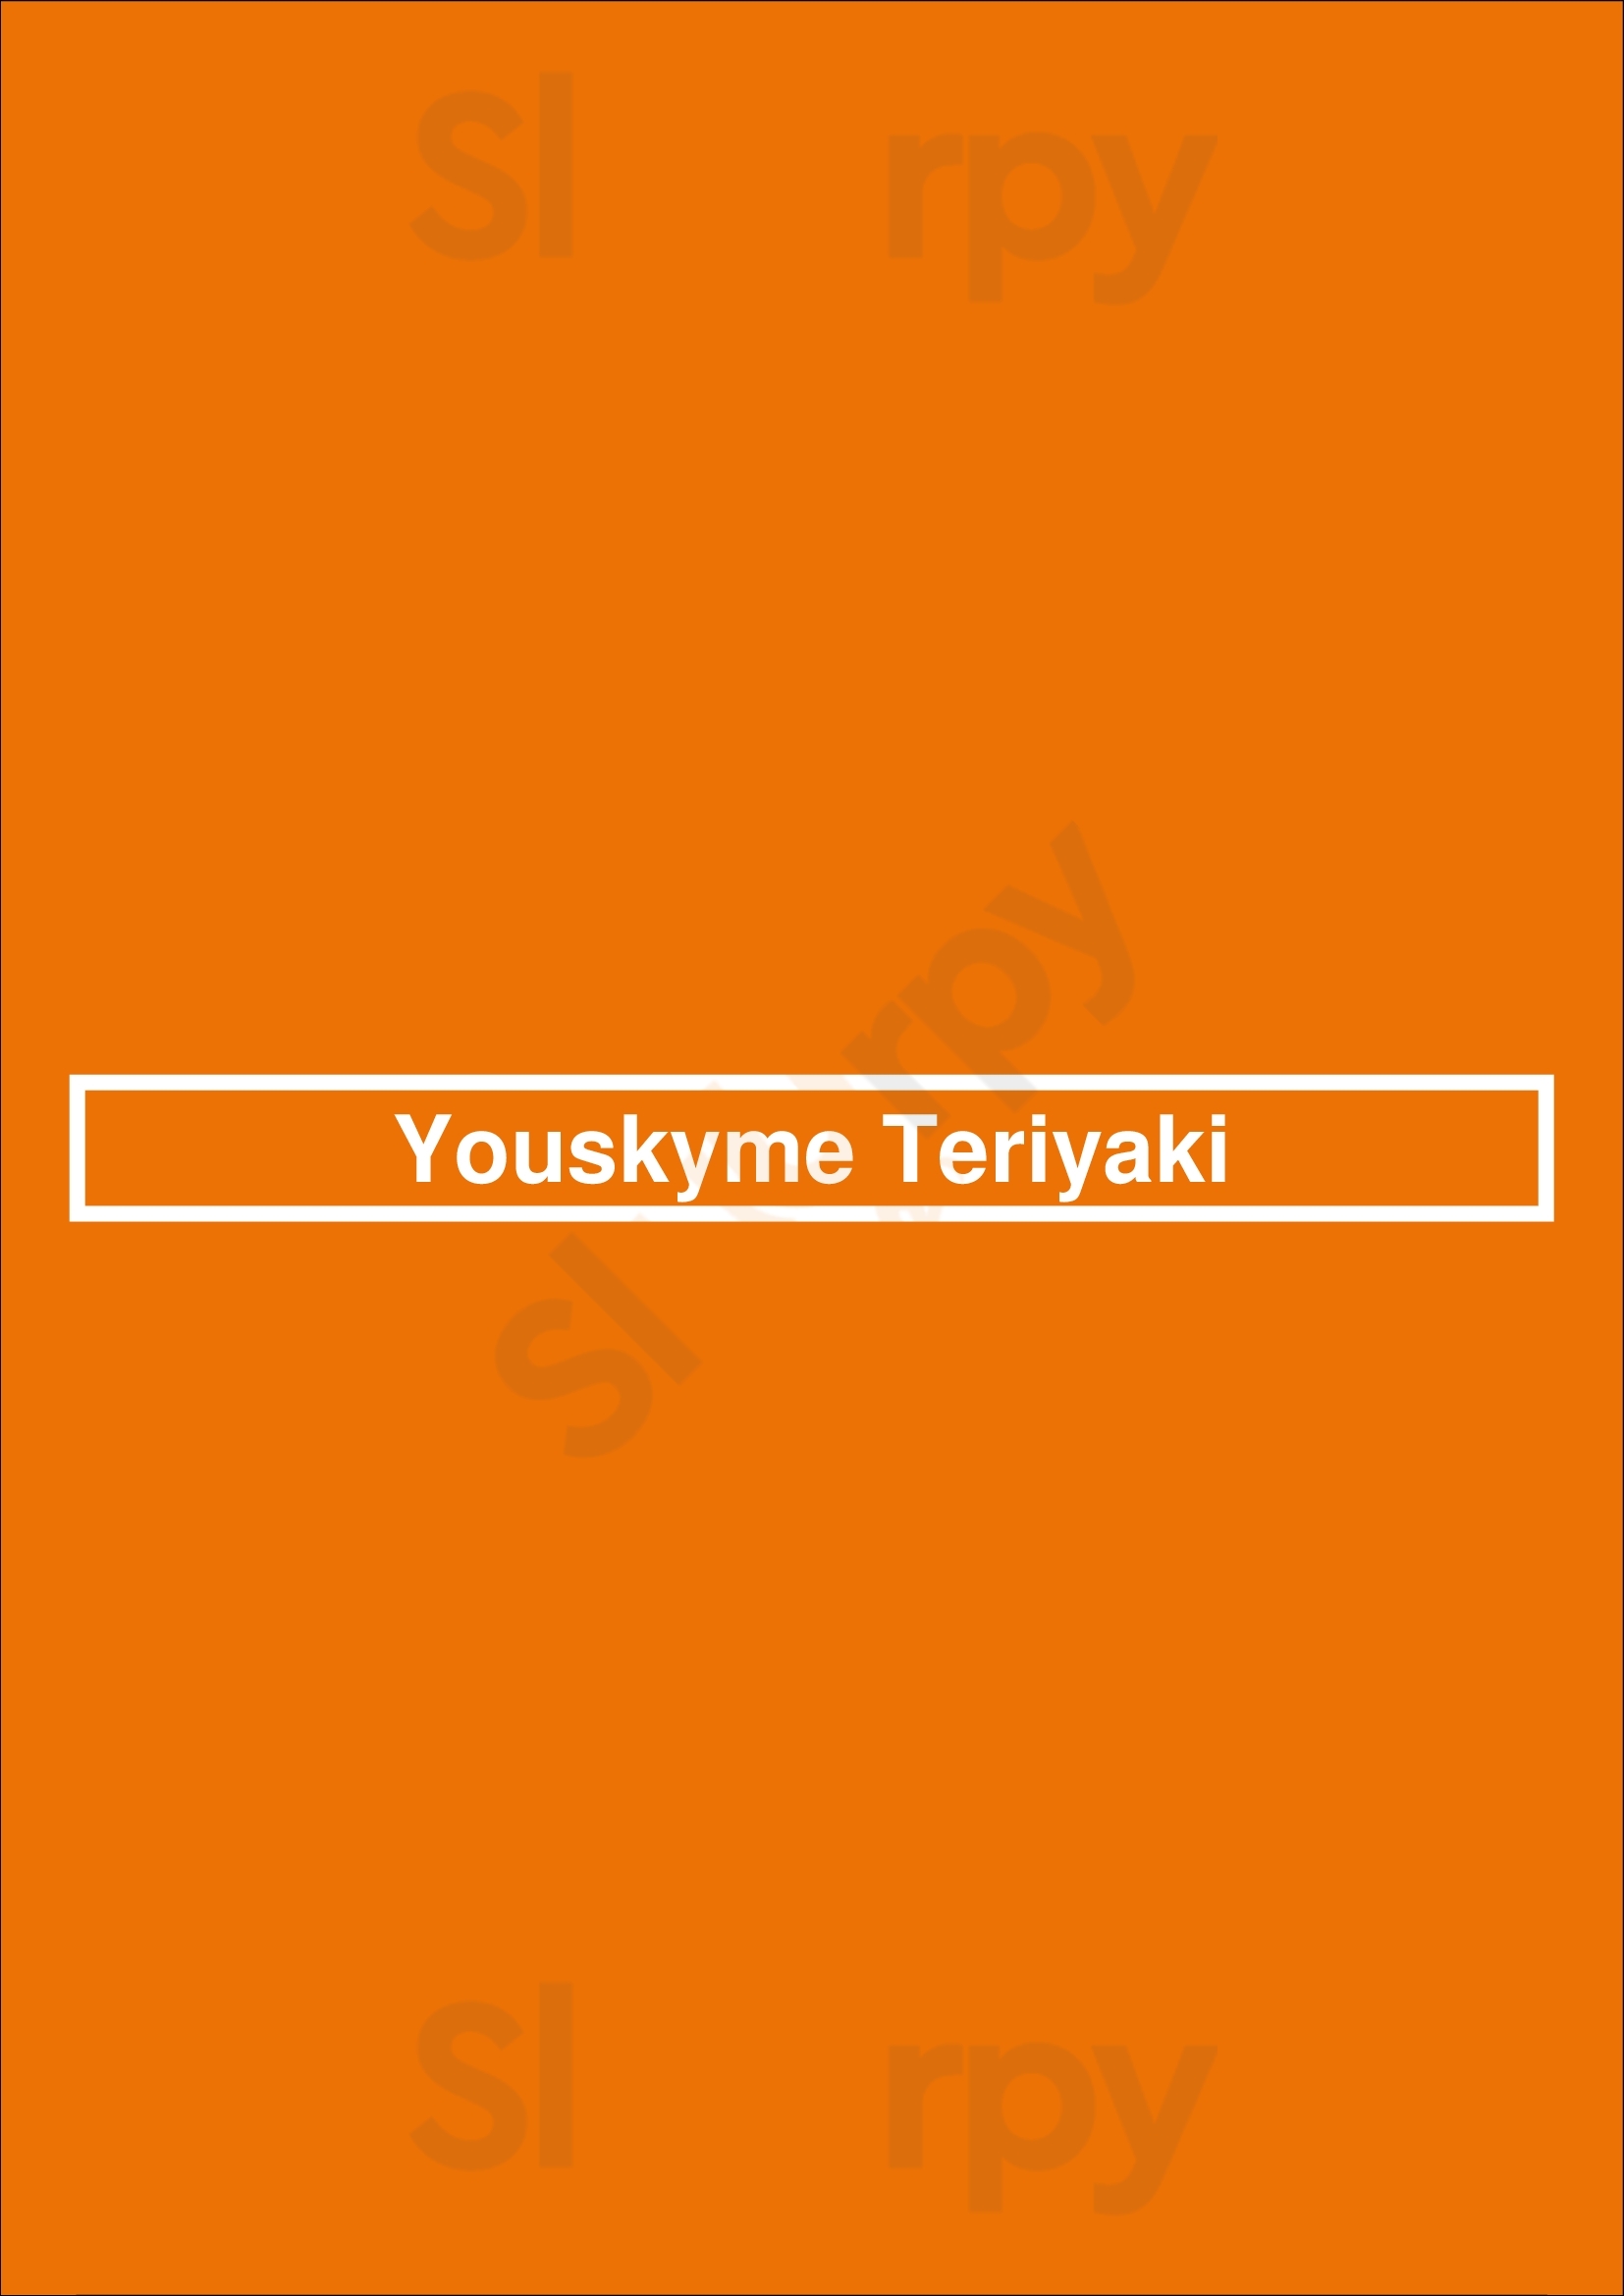 Youskyme Teriyaki Vancouver Menu - 1